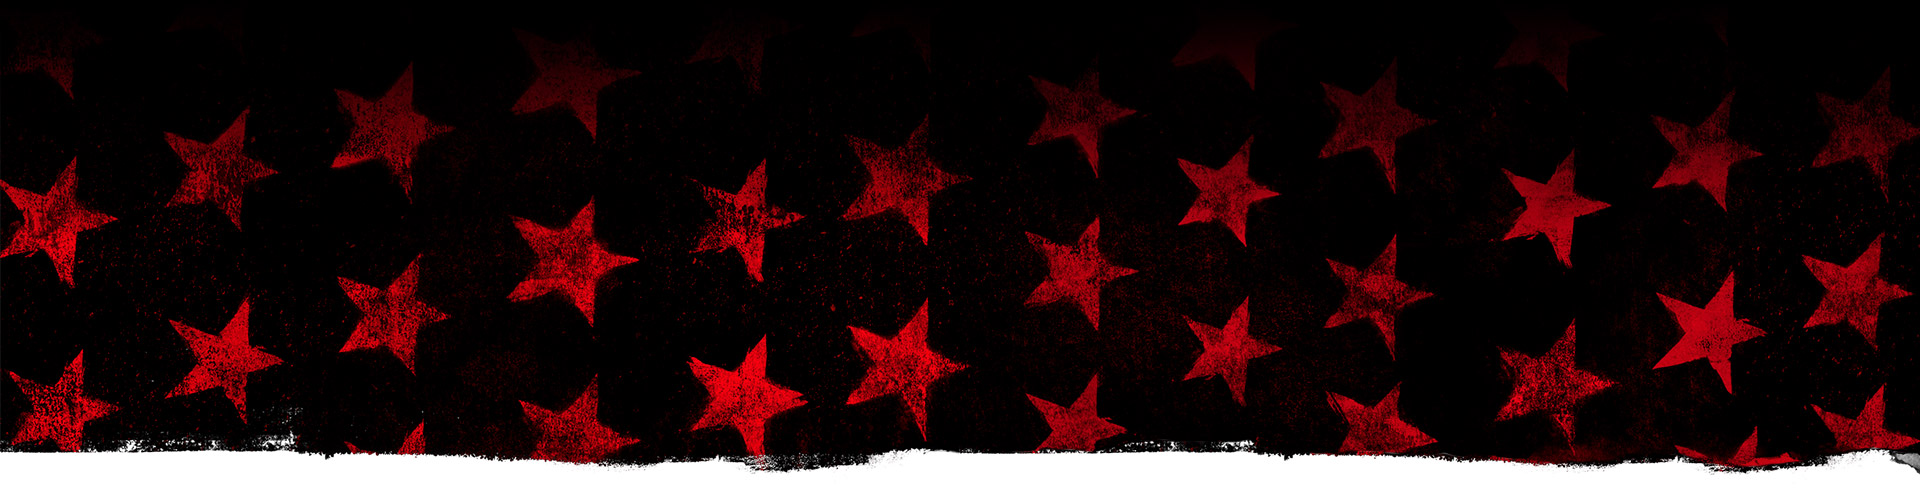 Rode sterren tegen een zwarte achtergrond.